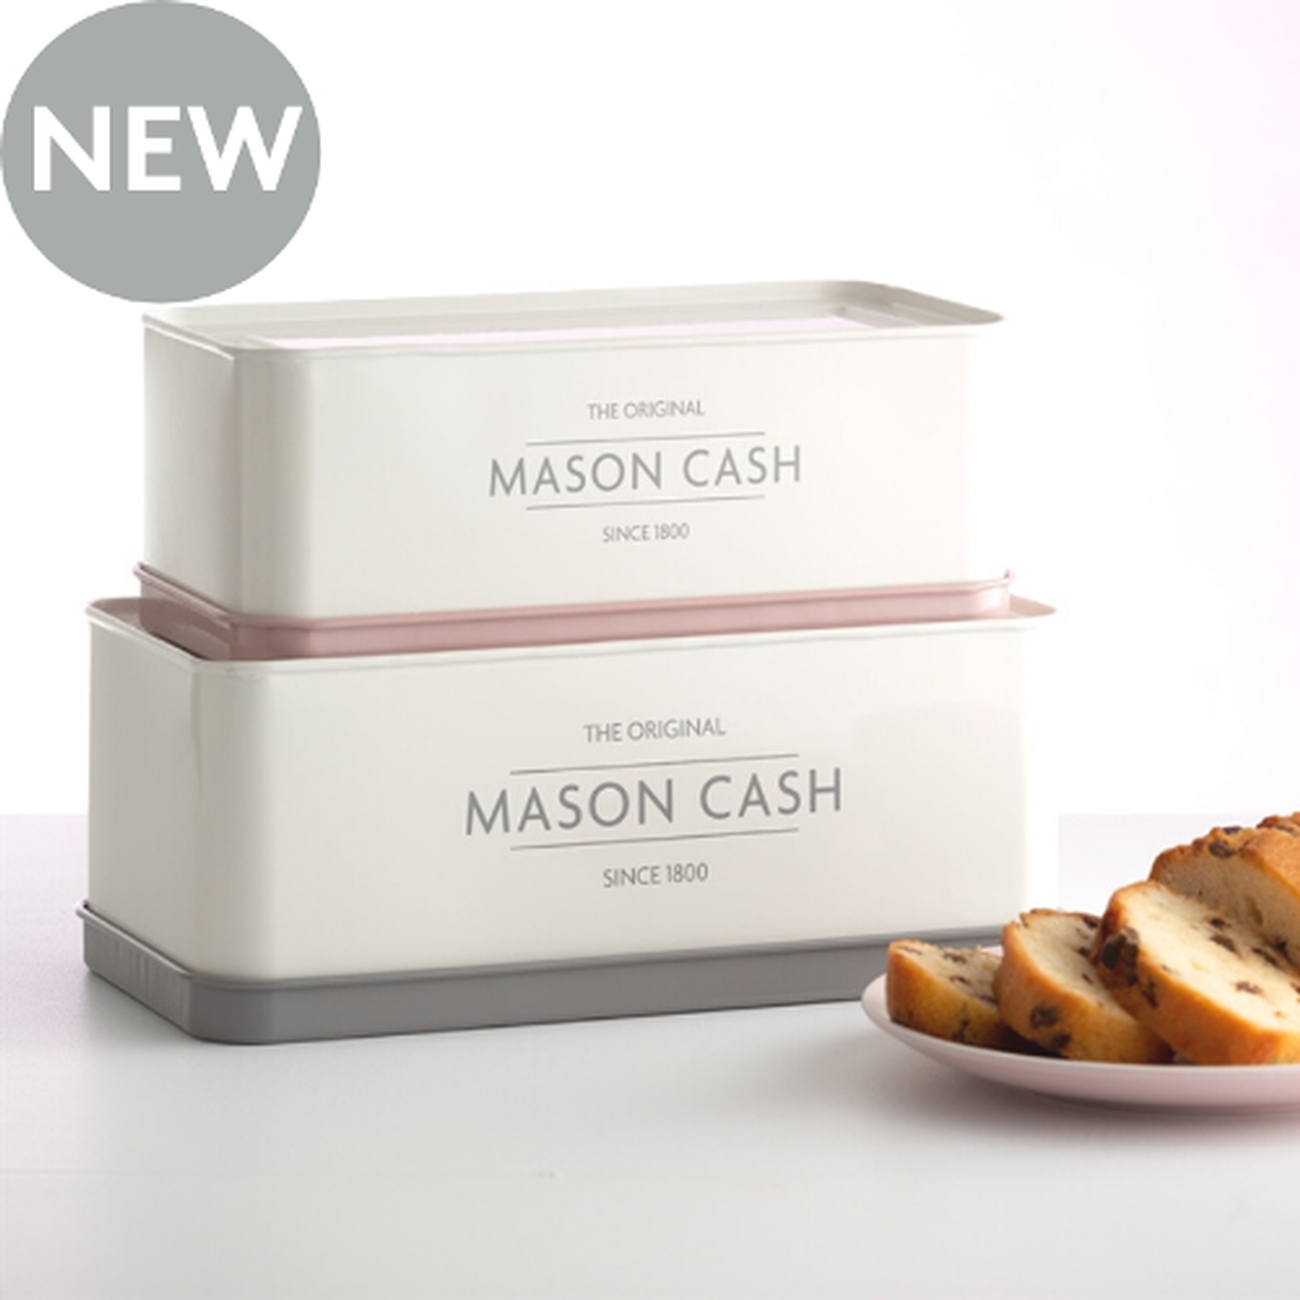 mason-cash-set-2-rectangular-storage-tins-innovative-kitchen - Mason Cash Innovative Kitchen Set of 2 Rectangular Storage Tins